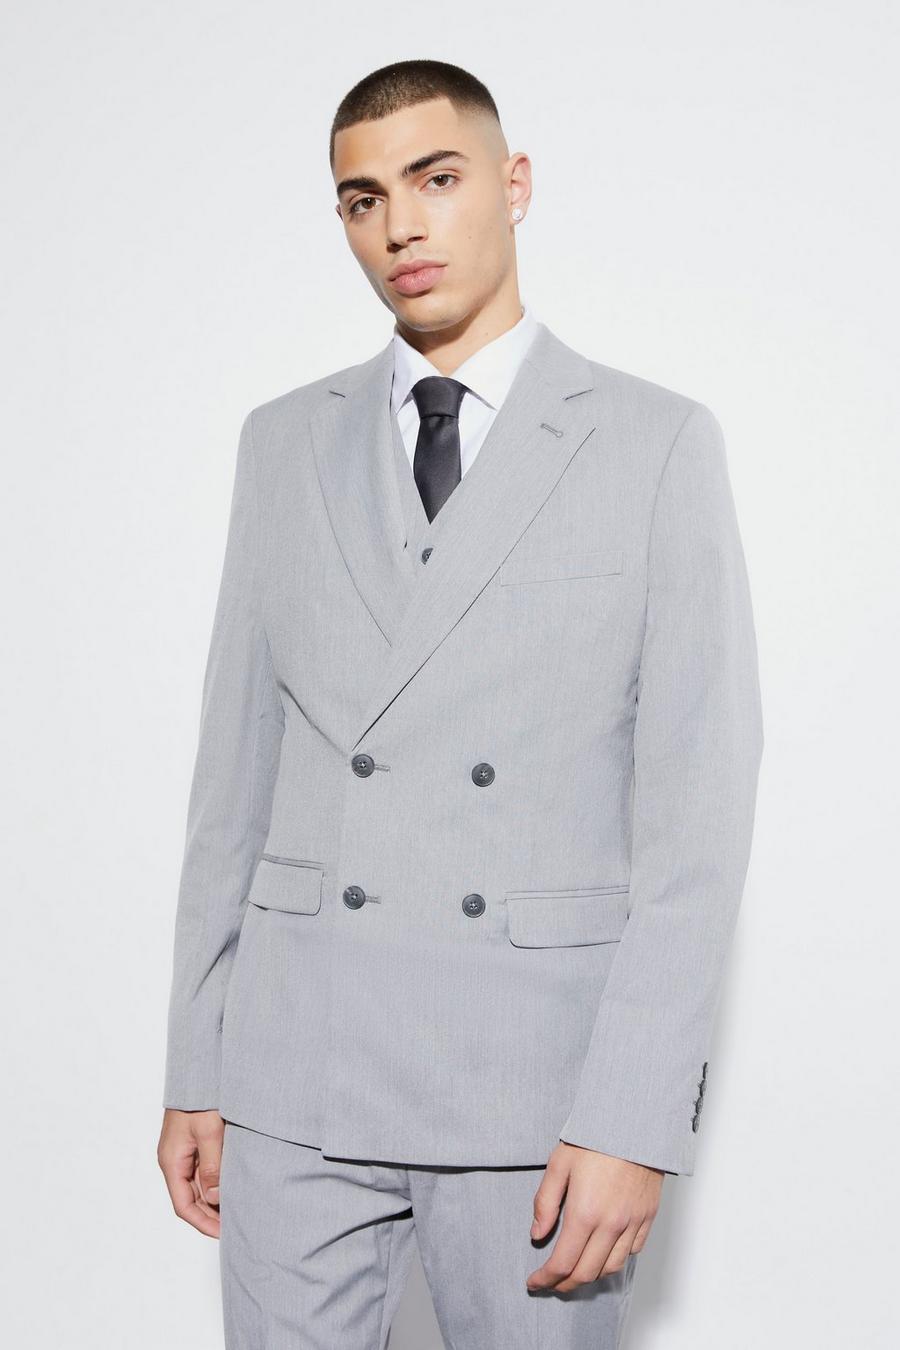 אפור gris ז'קט חליפה בגזרה צרה עם דשים כפולים